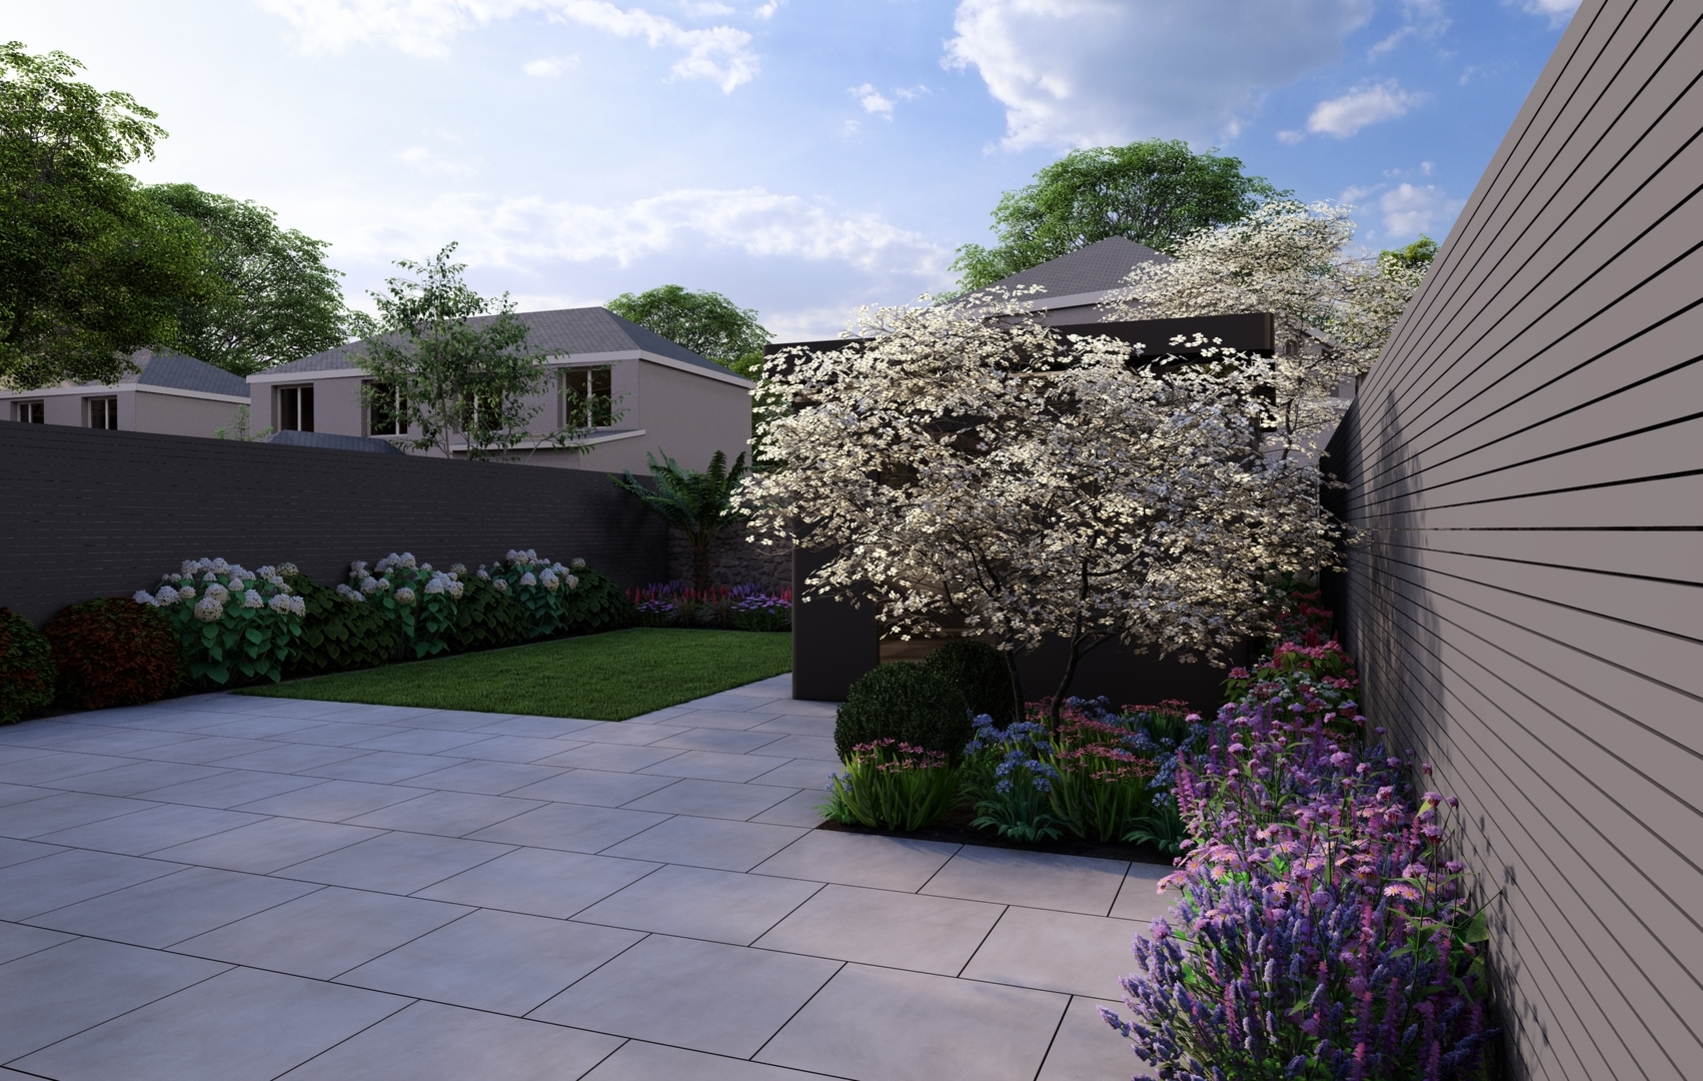 Garden Design Dublin with the emphasis on a colourful, versatile & private outdoor space  |  Owen Chubb Garden Design, Tel 087-2306 128